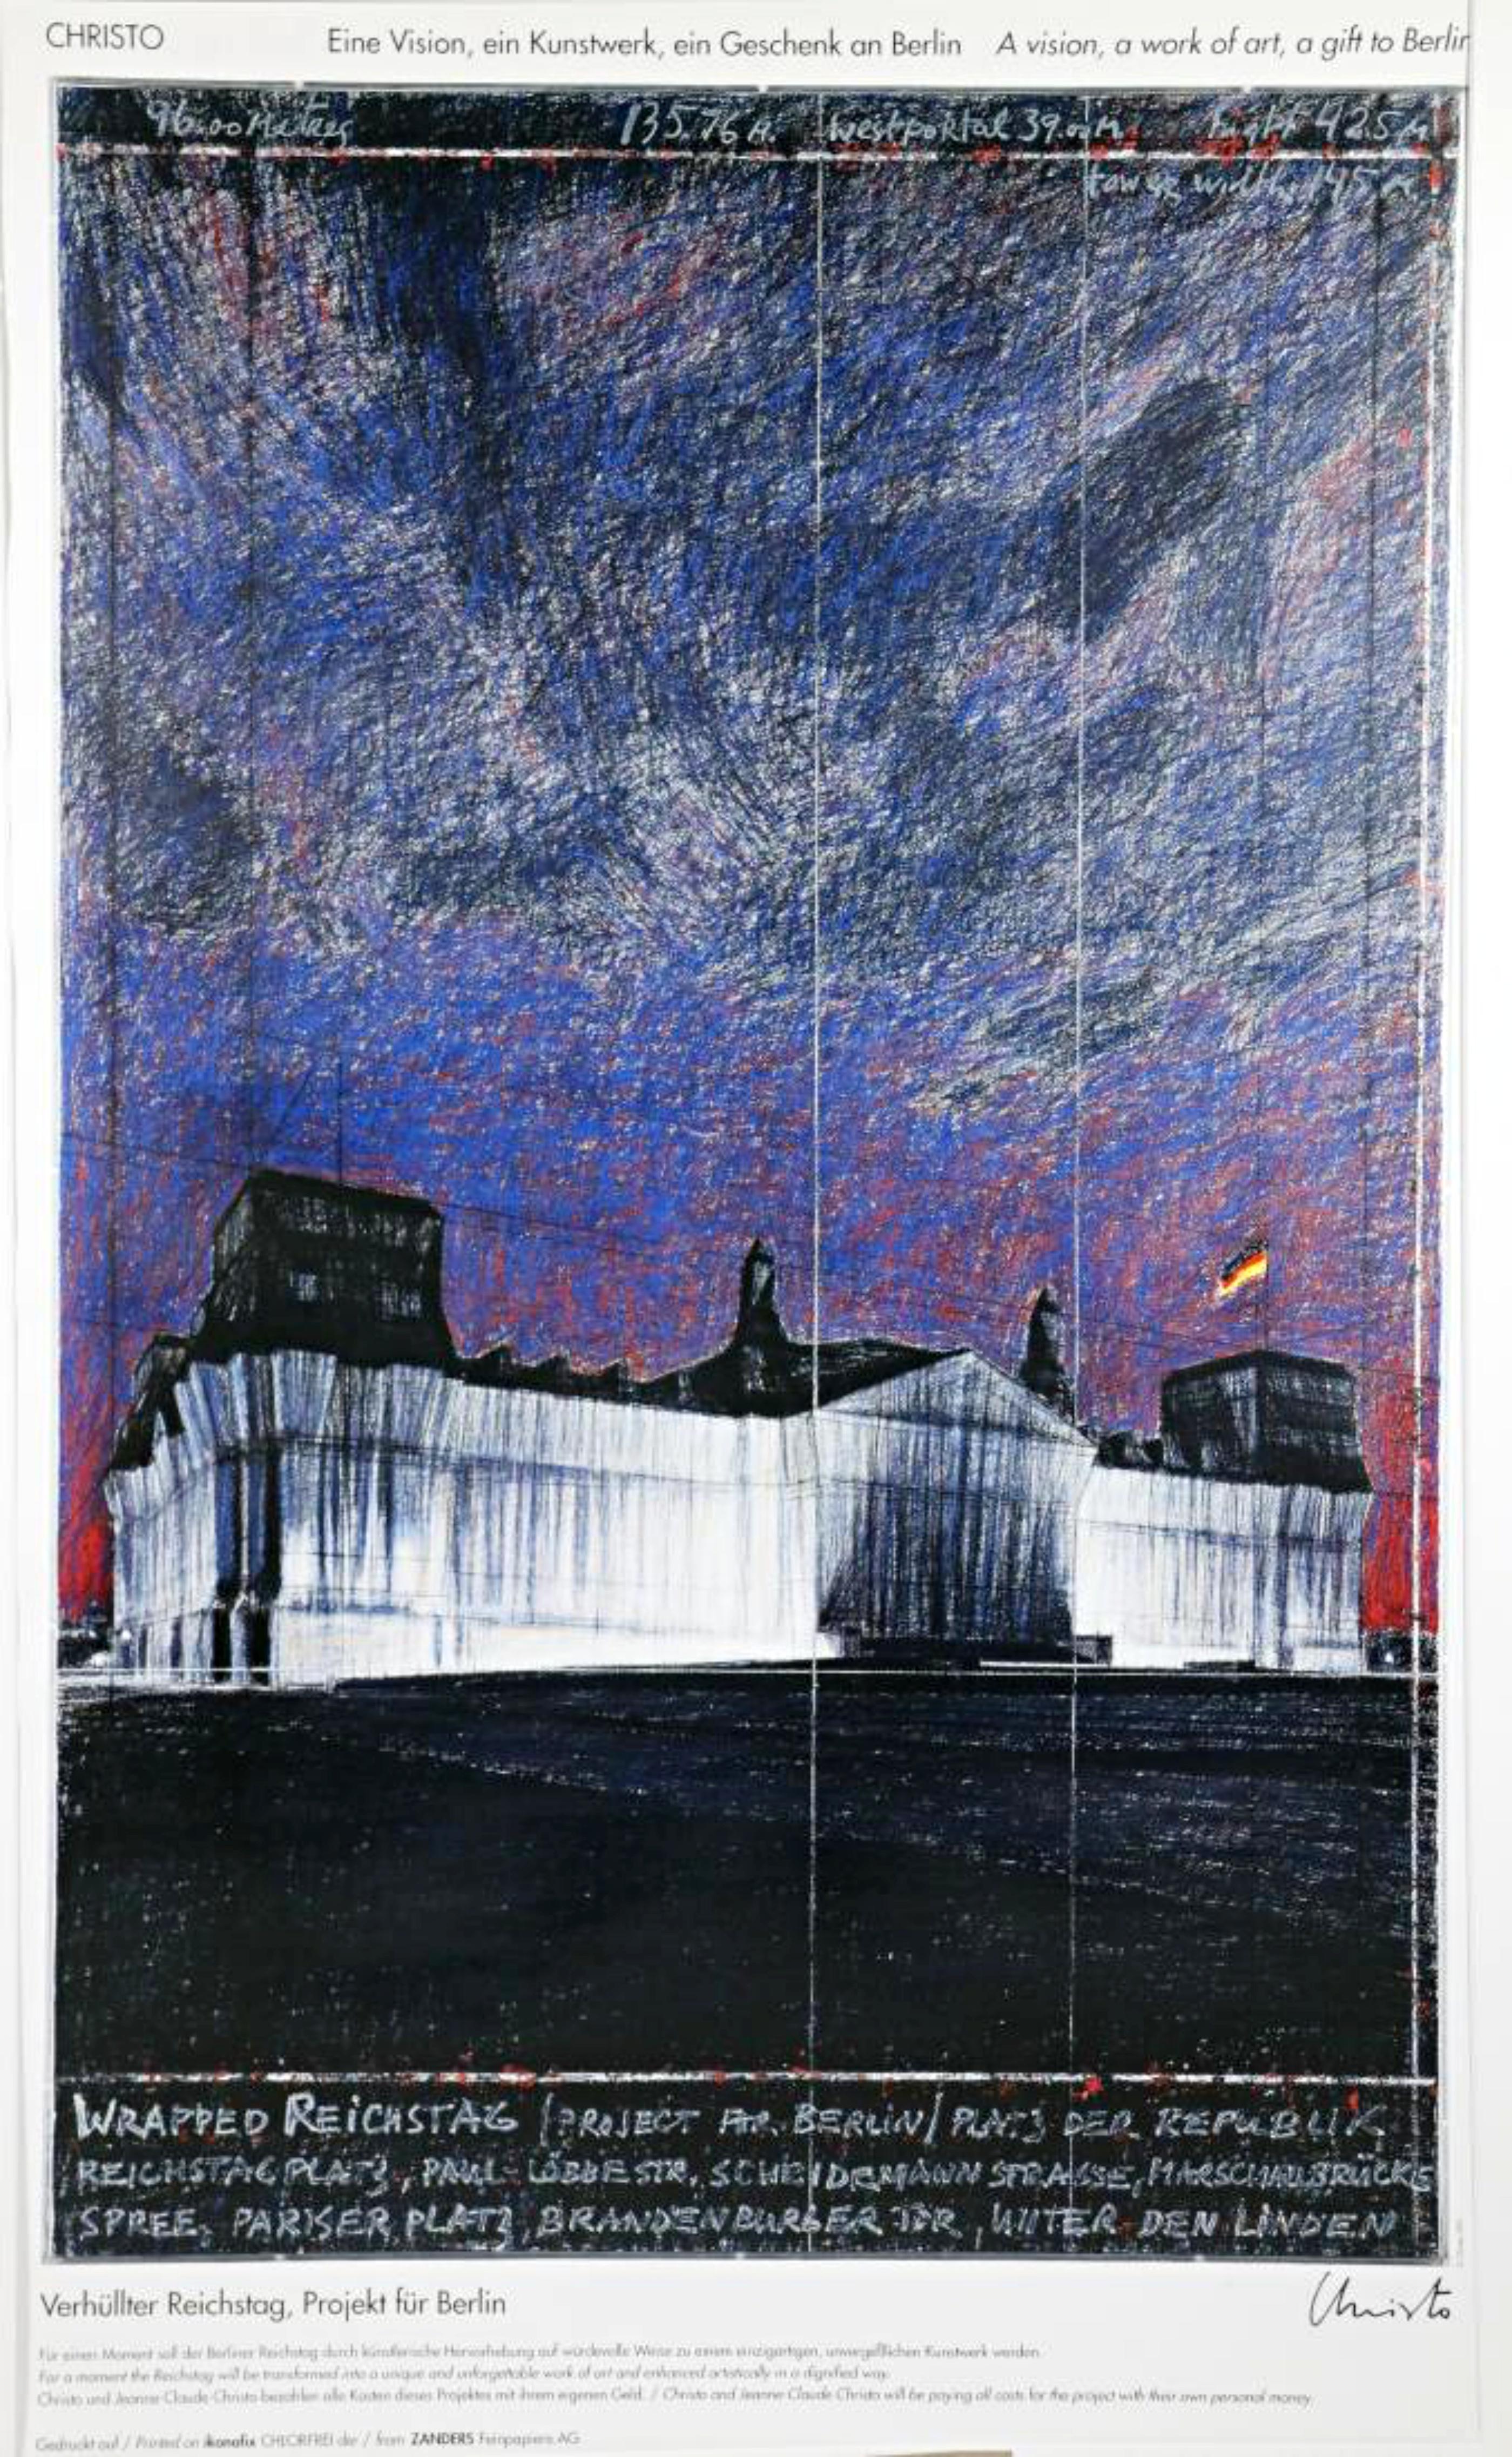 The Wrapped Reichstag at Night (Handsigniert) – Print von Christo